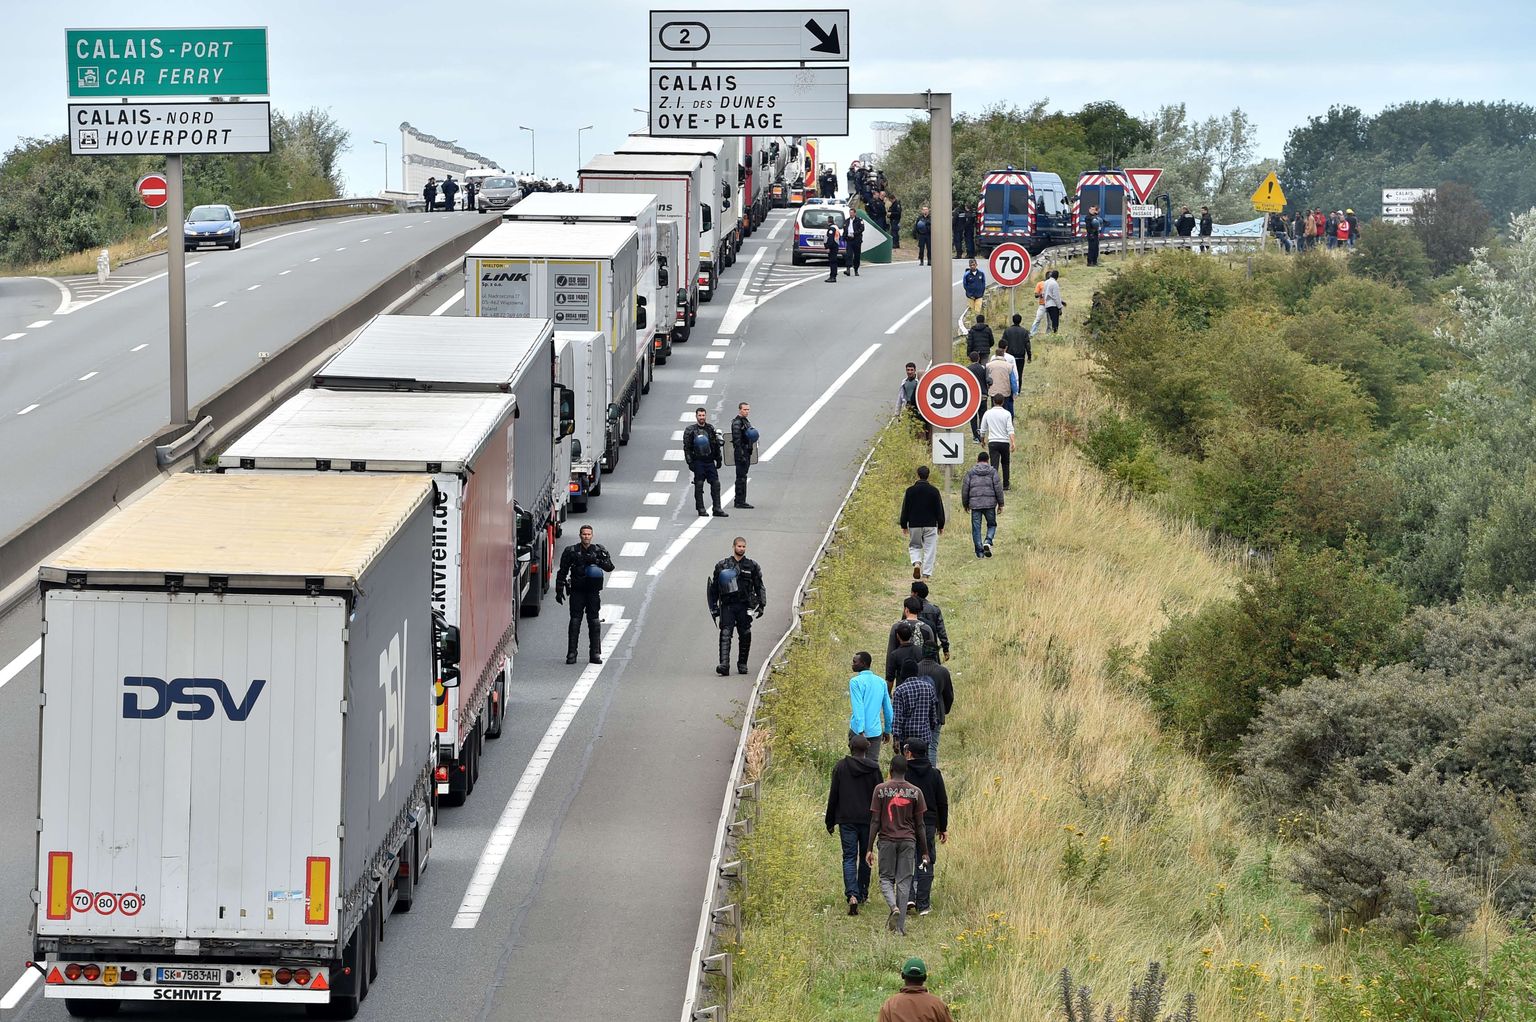 Calais on veokijuhtidele illegaalsete immigrantide tõttu peavalu tekitanud juba aastaid.